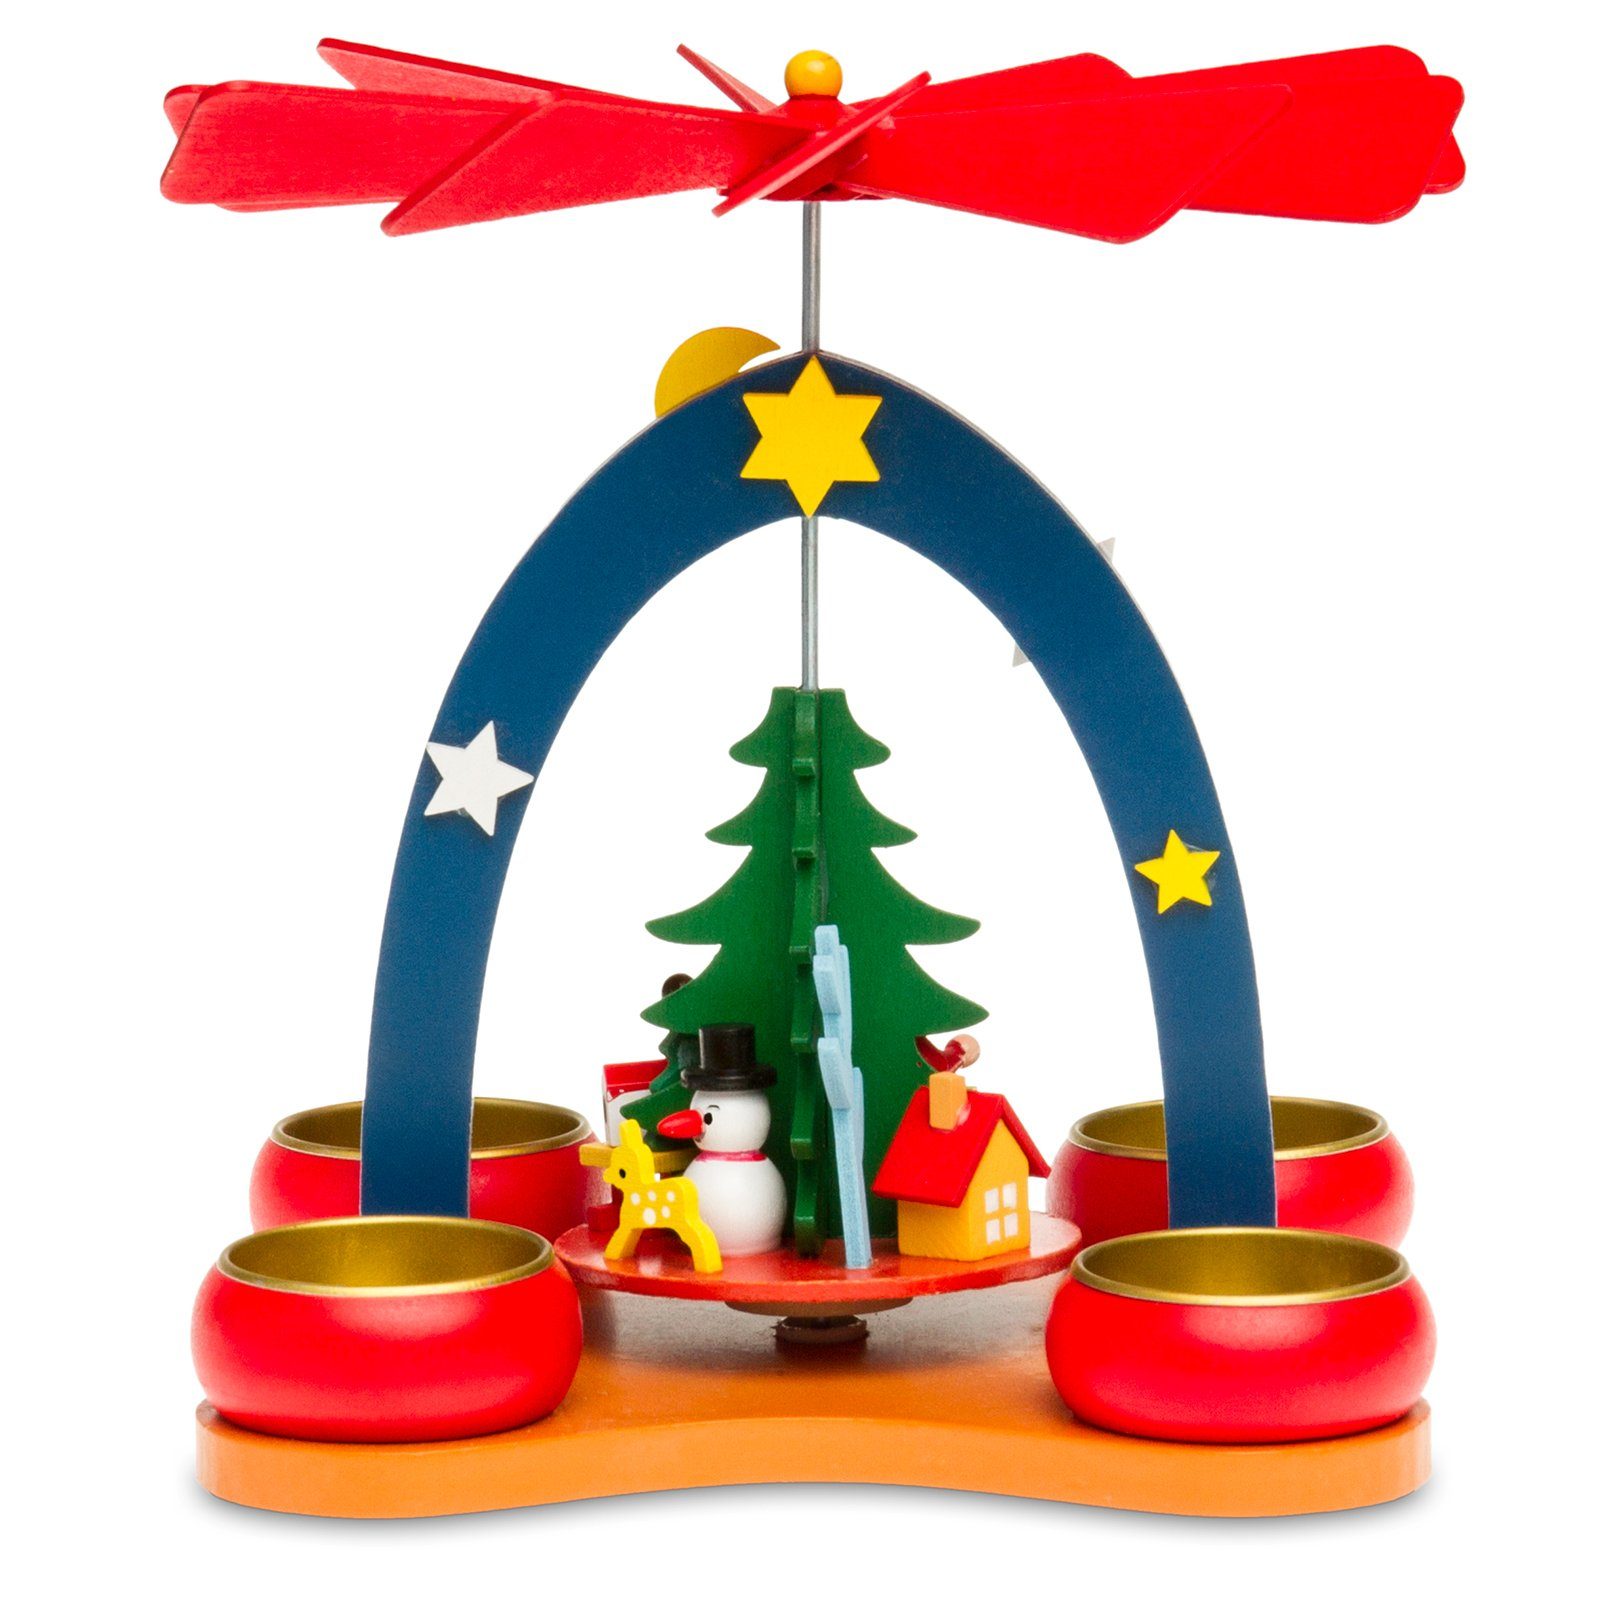 P26 Teelichte H:19cm für SIKORA buntes Weihnachtspyramide Kinderzimmer